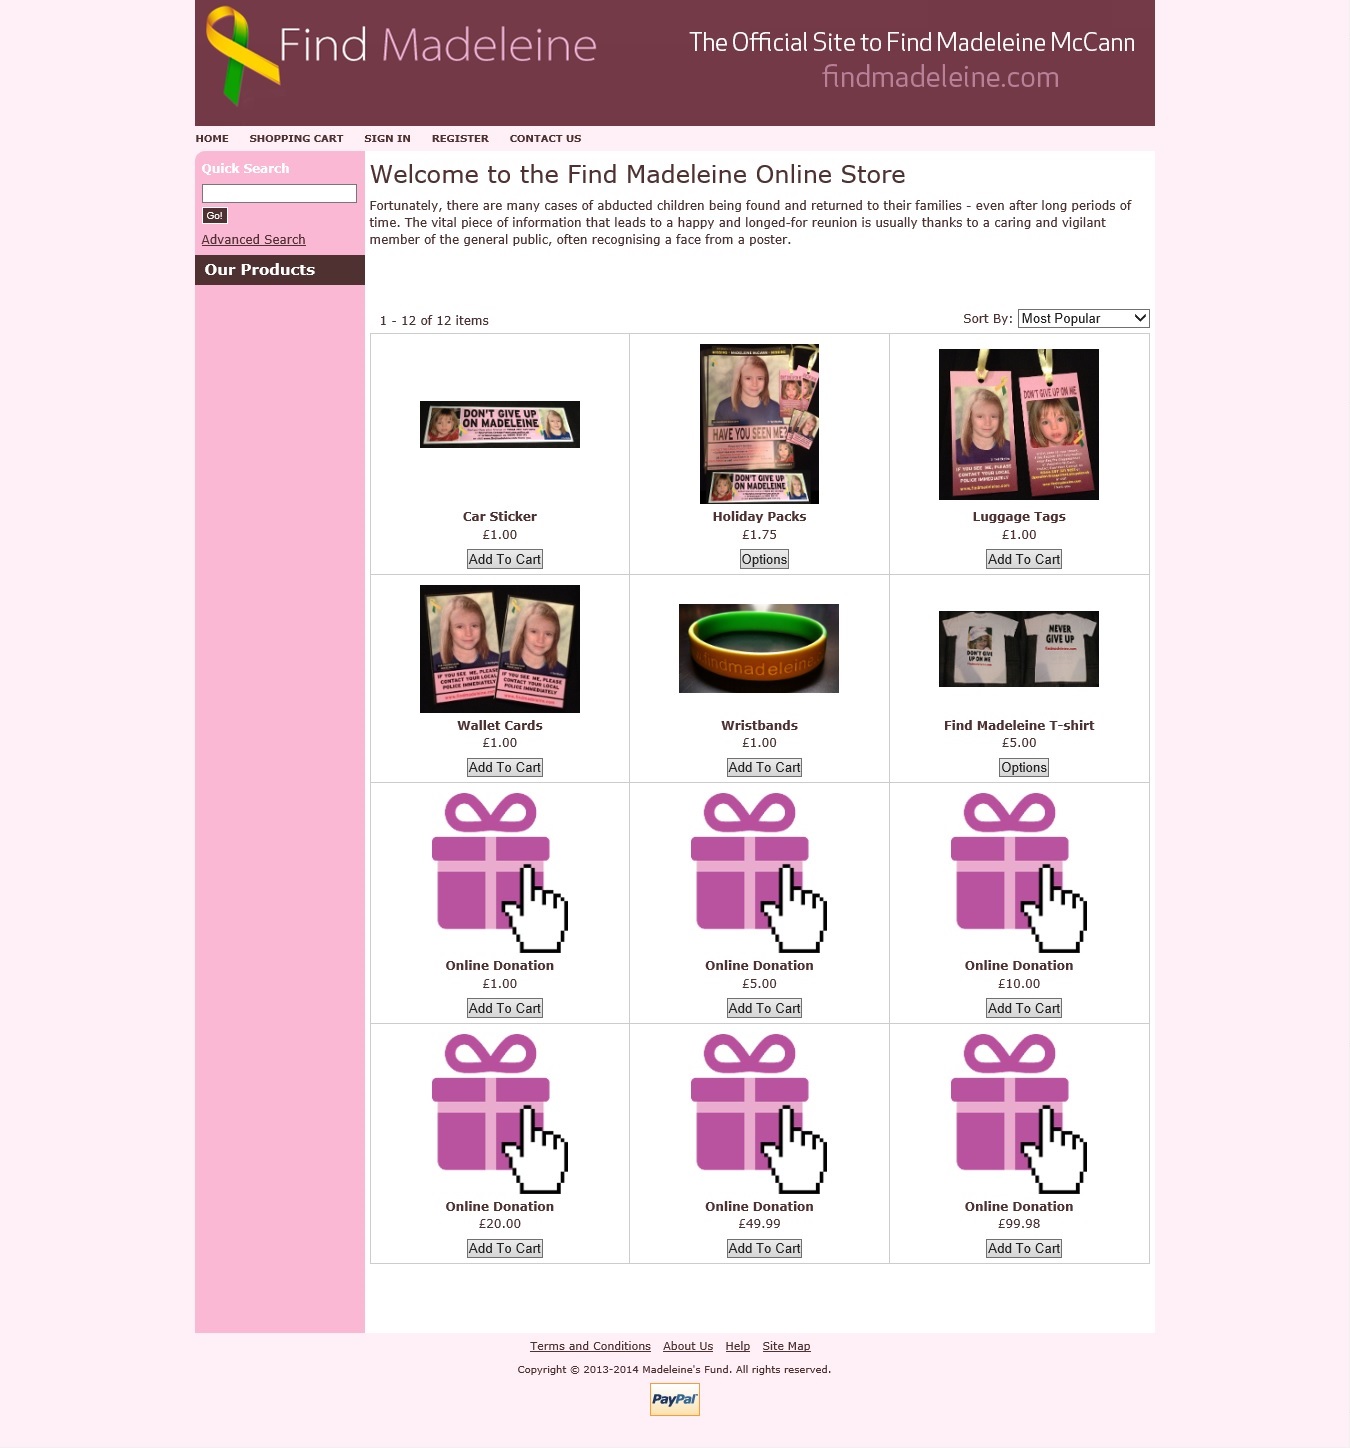 Find Madeleine Online Shop: Copyright © 2013-2014 Madeleine's Fund. All rights reserved.